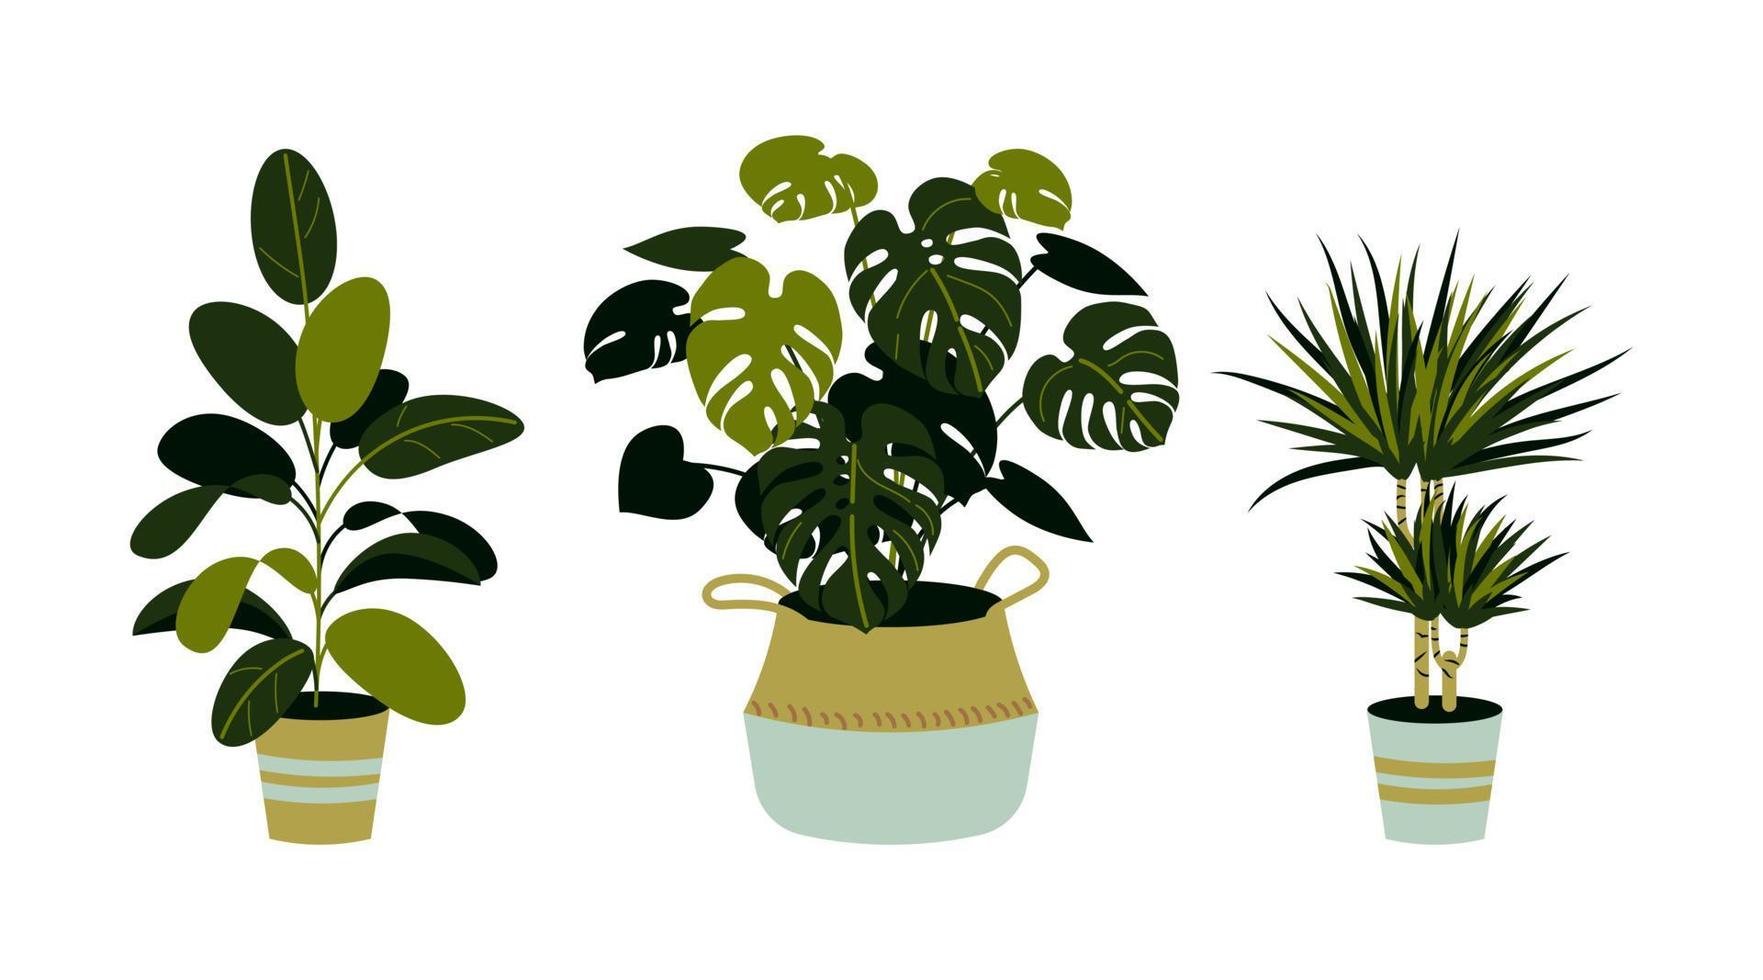 conjunto de plantas caseras, incluyendo ficus, monstera, dracaena aislado en blanco. plantas caseras en macetas. elementos de diseño de interiores. vector